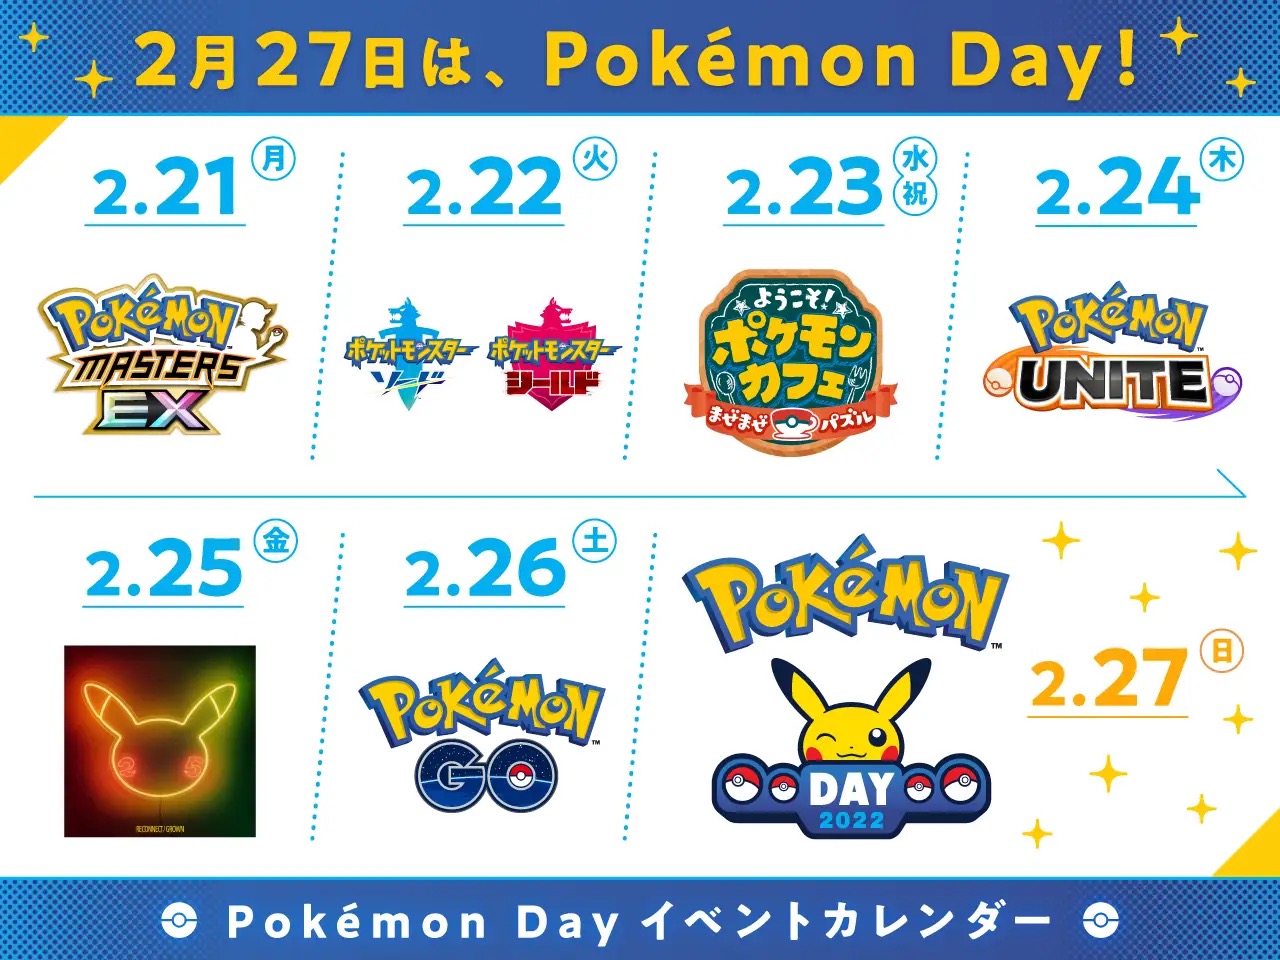 「Pokémon Day」までのスケジュール